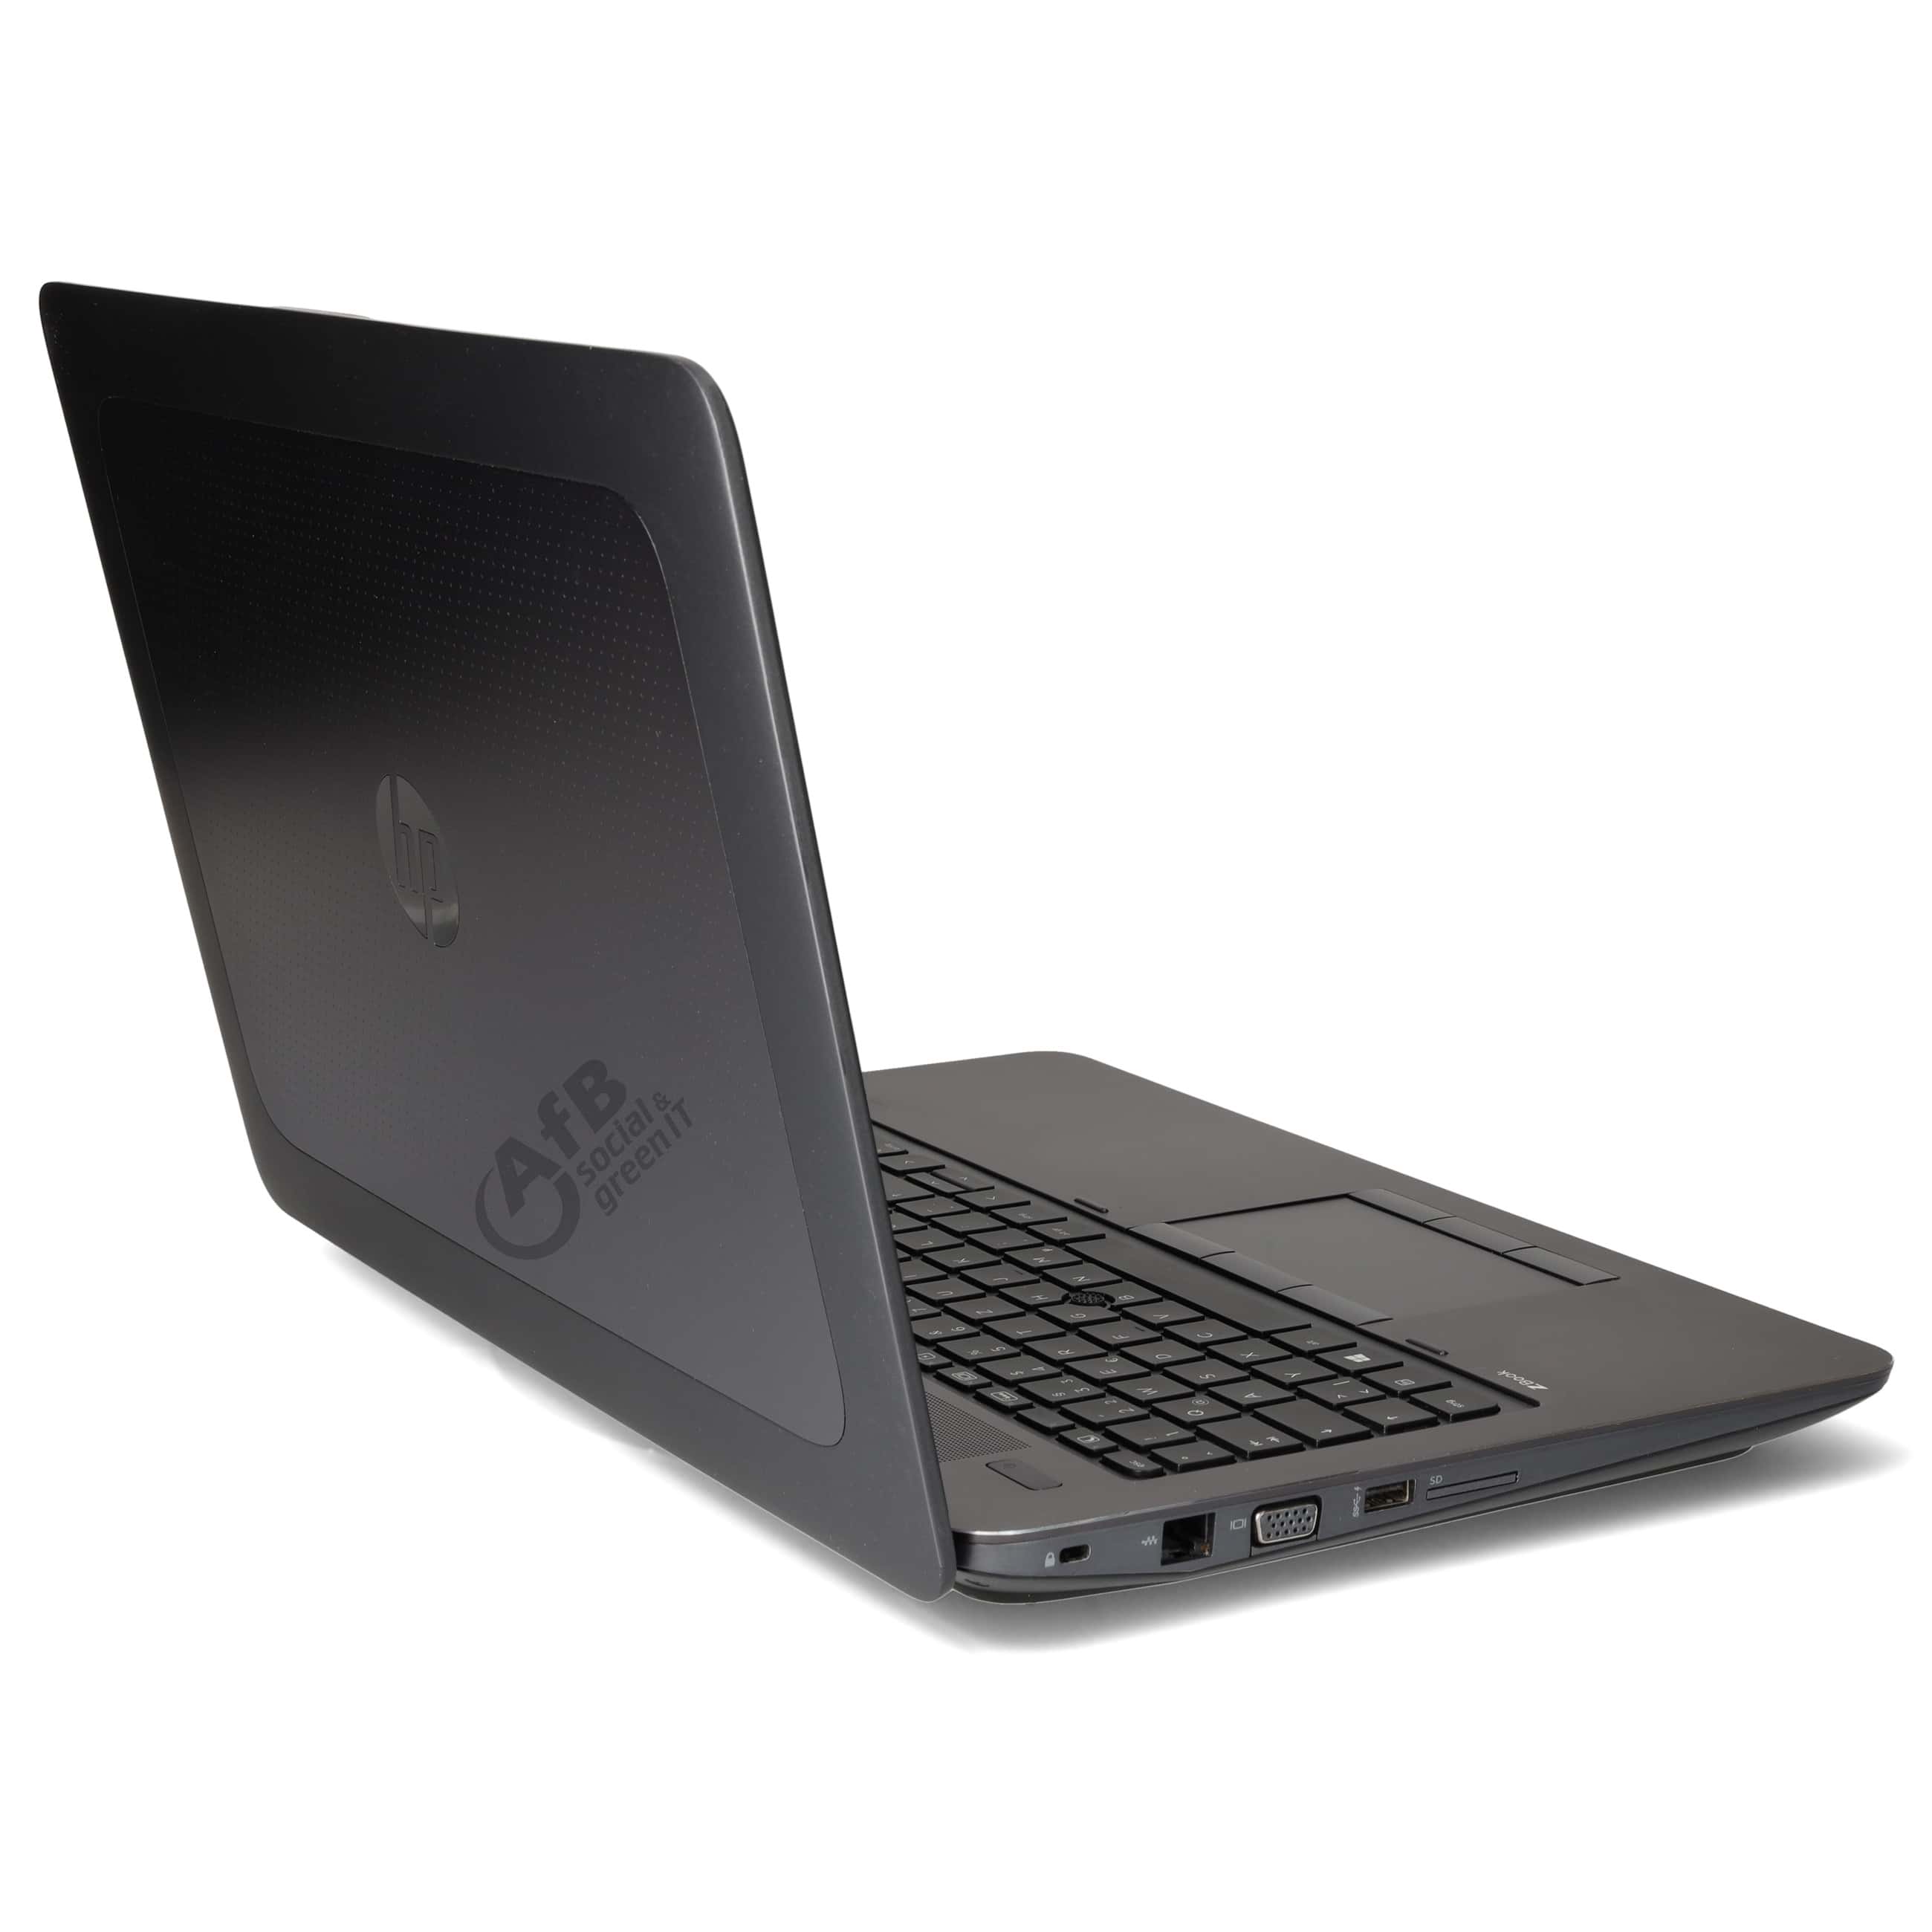 HP ZBook 15 G3 

 - 15,6 Zoll - Intel Core i7 6820HQ @ 2,7 GHz - 16 GB DDR4 - 500 GB SSD - Quadro M1000M - 1920 x 1080 FHD - Windows 10 Professional